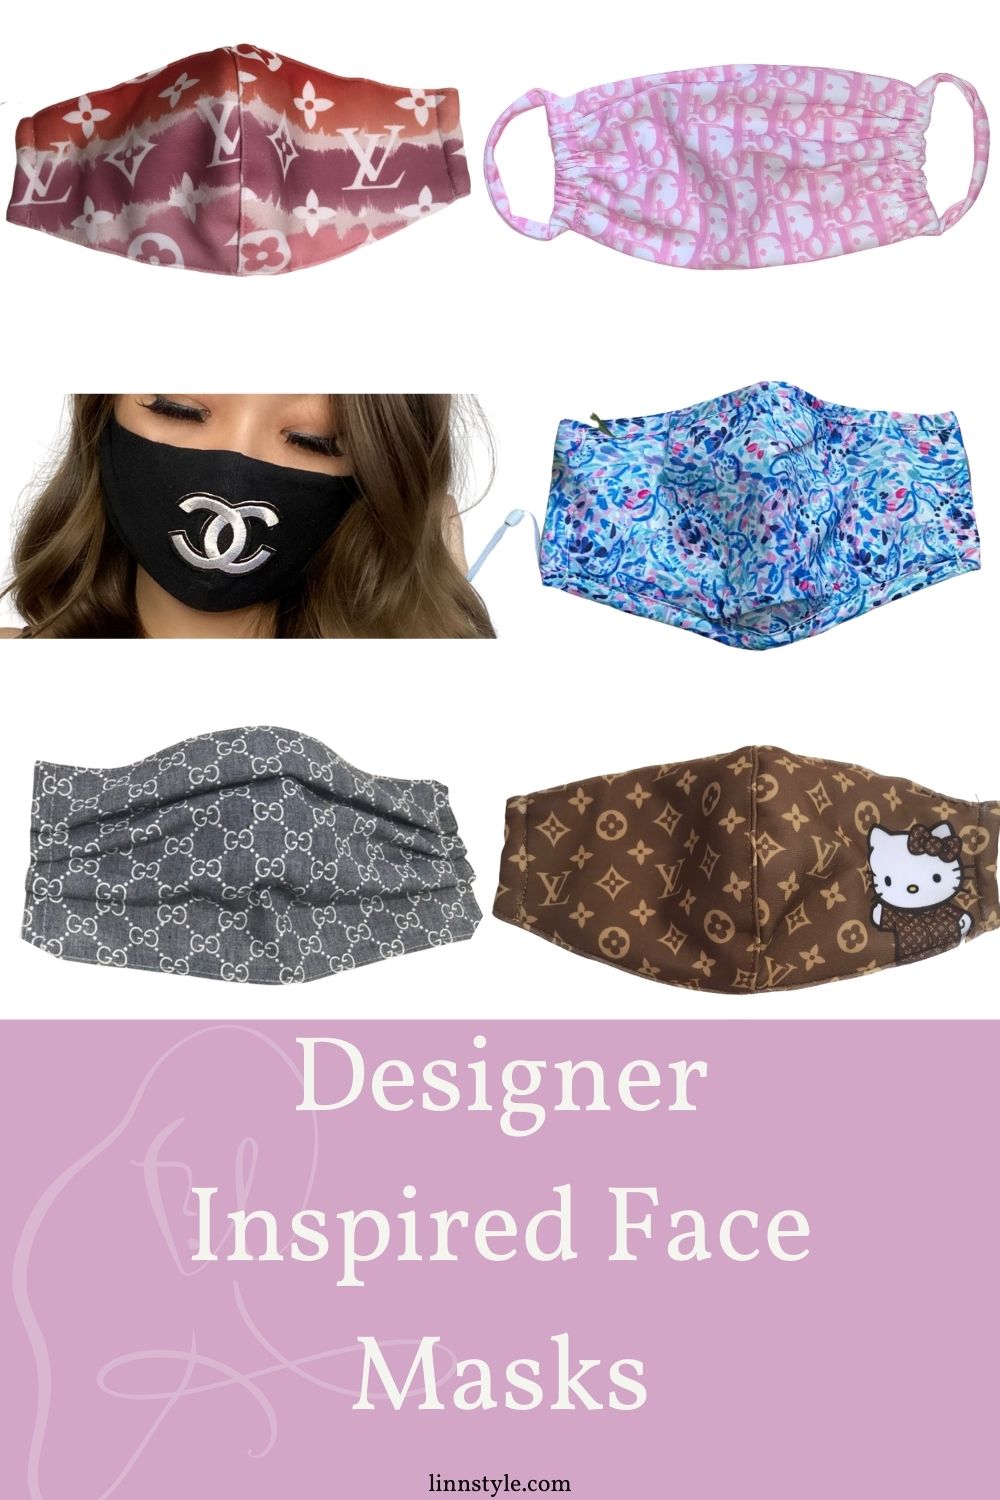 Designer Inspired Face Masks on Etsy | Linn Style by Jessica Linn